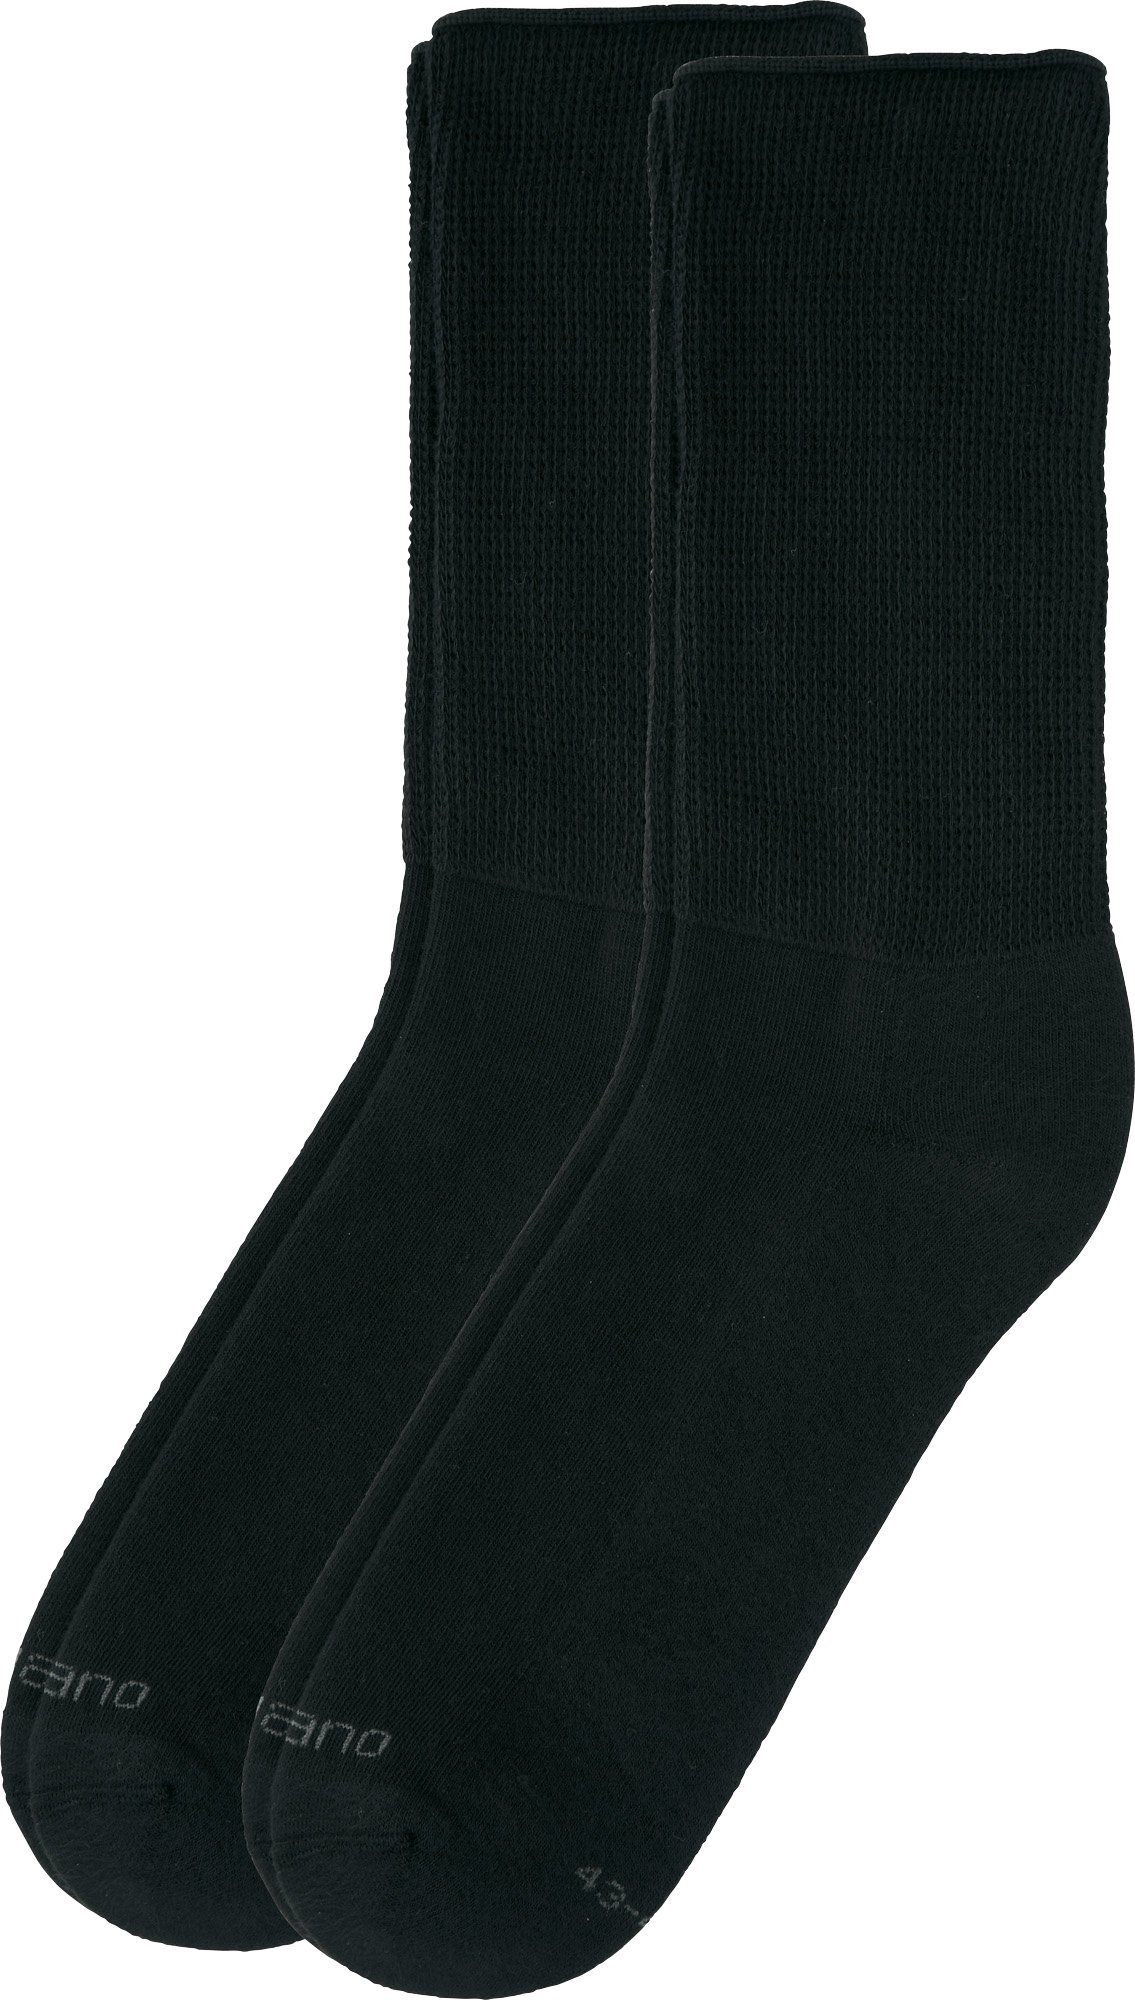 Softbund Paar 2 mit Socken schwarz Camano Uni Unisex-Socken